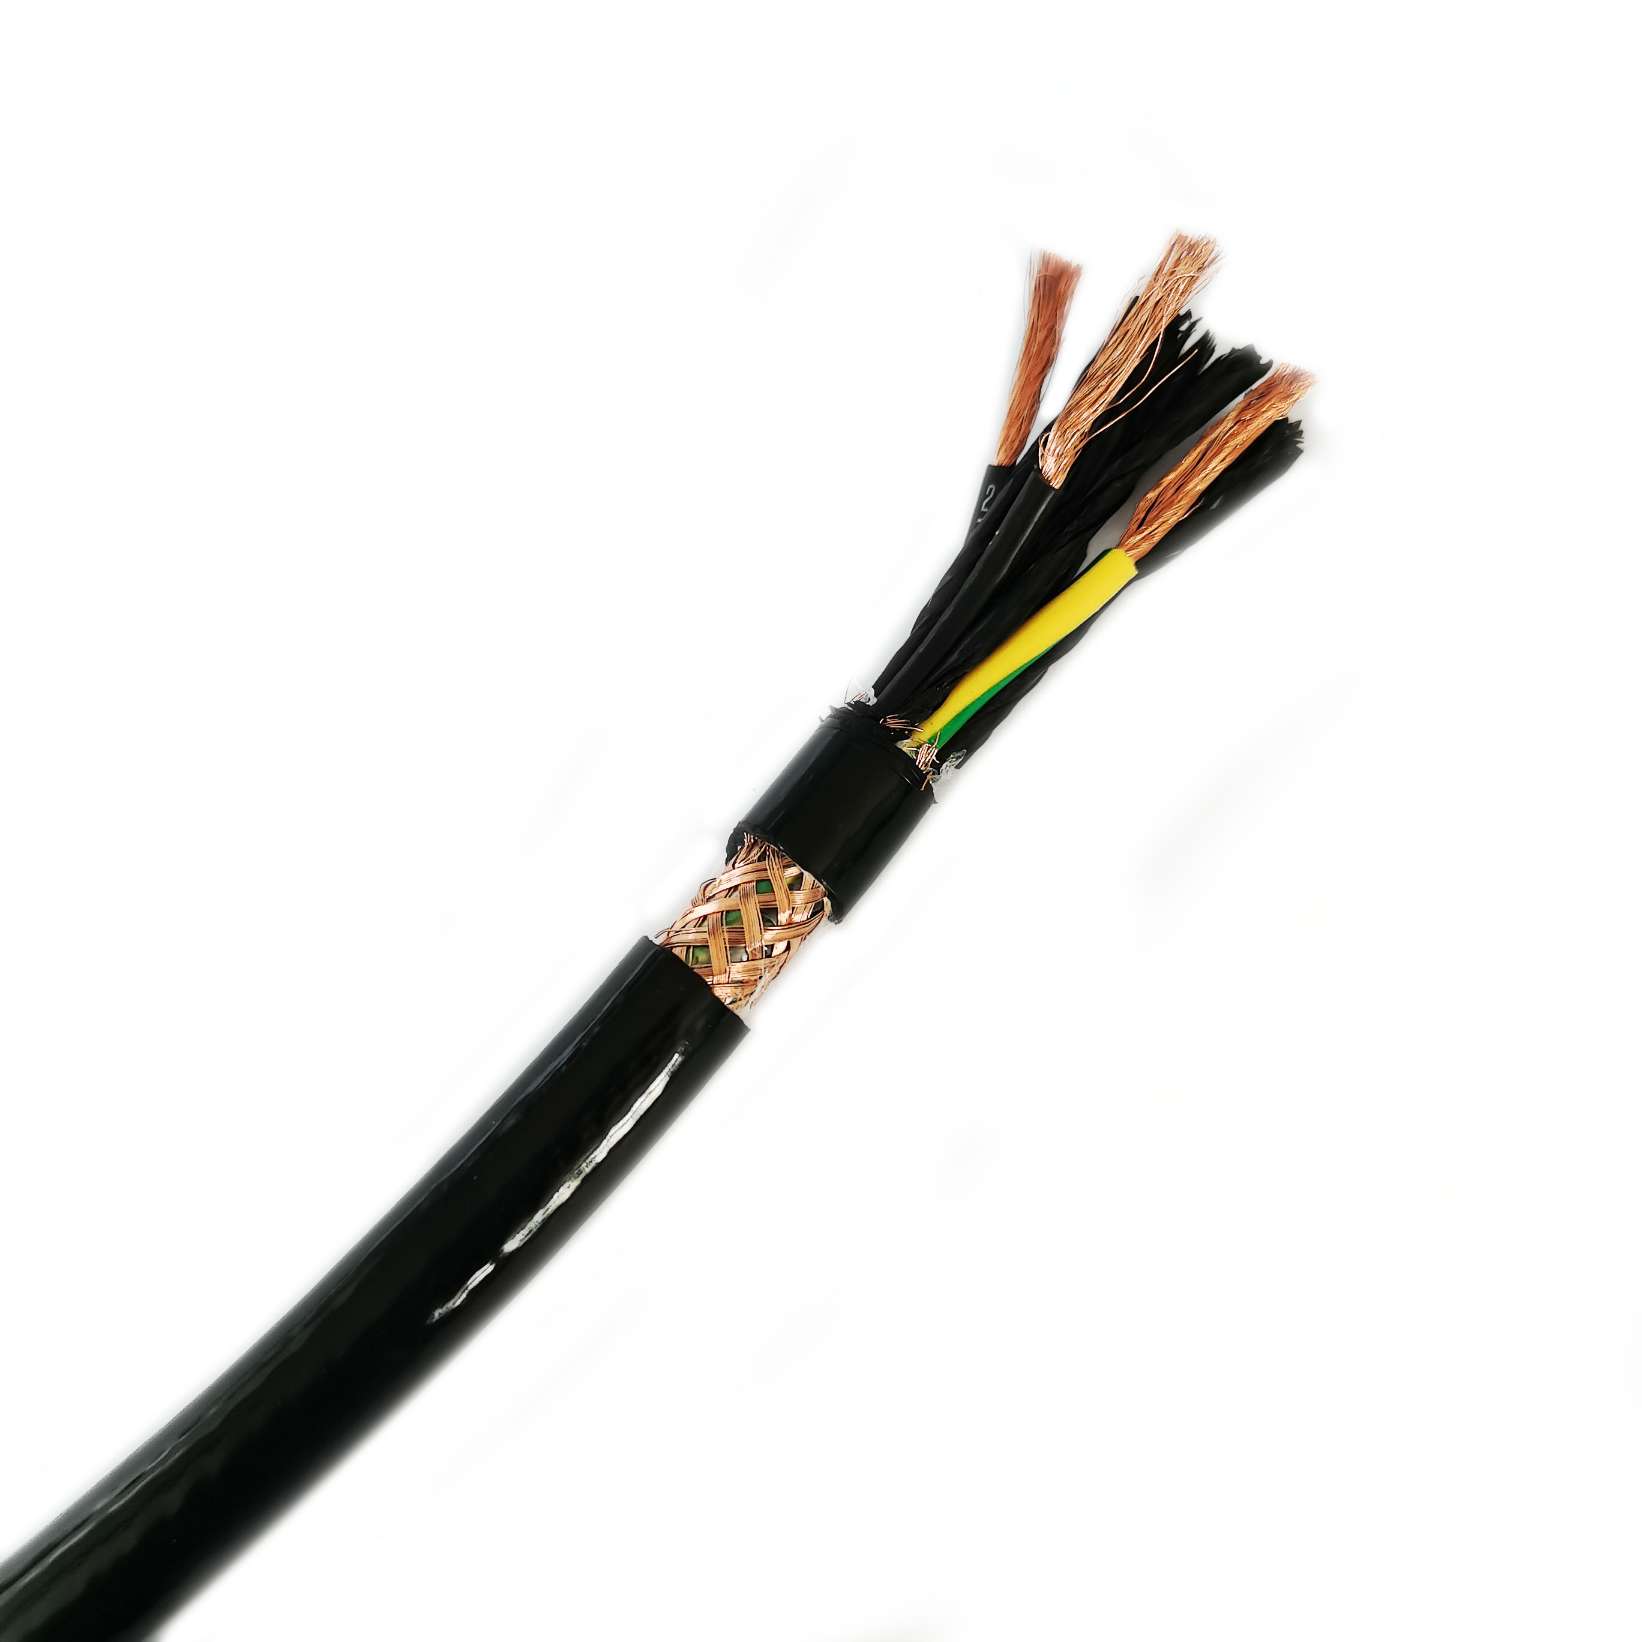 Quais são as vantagens da utilização de cabos PUR em relação a outros tipos de cabos?